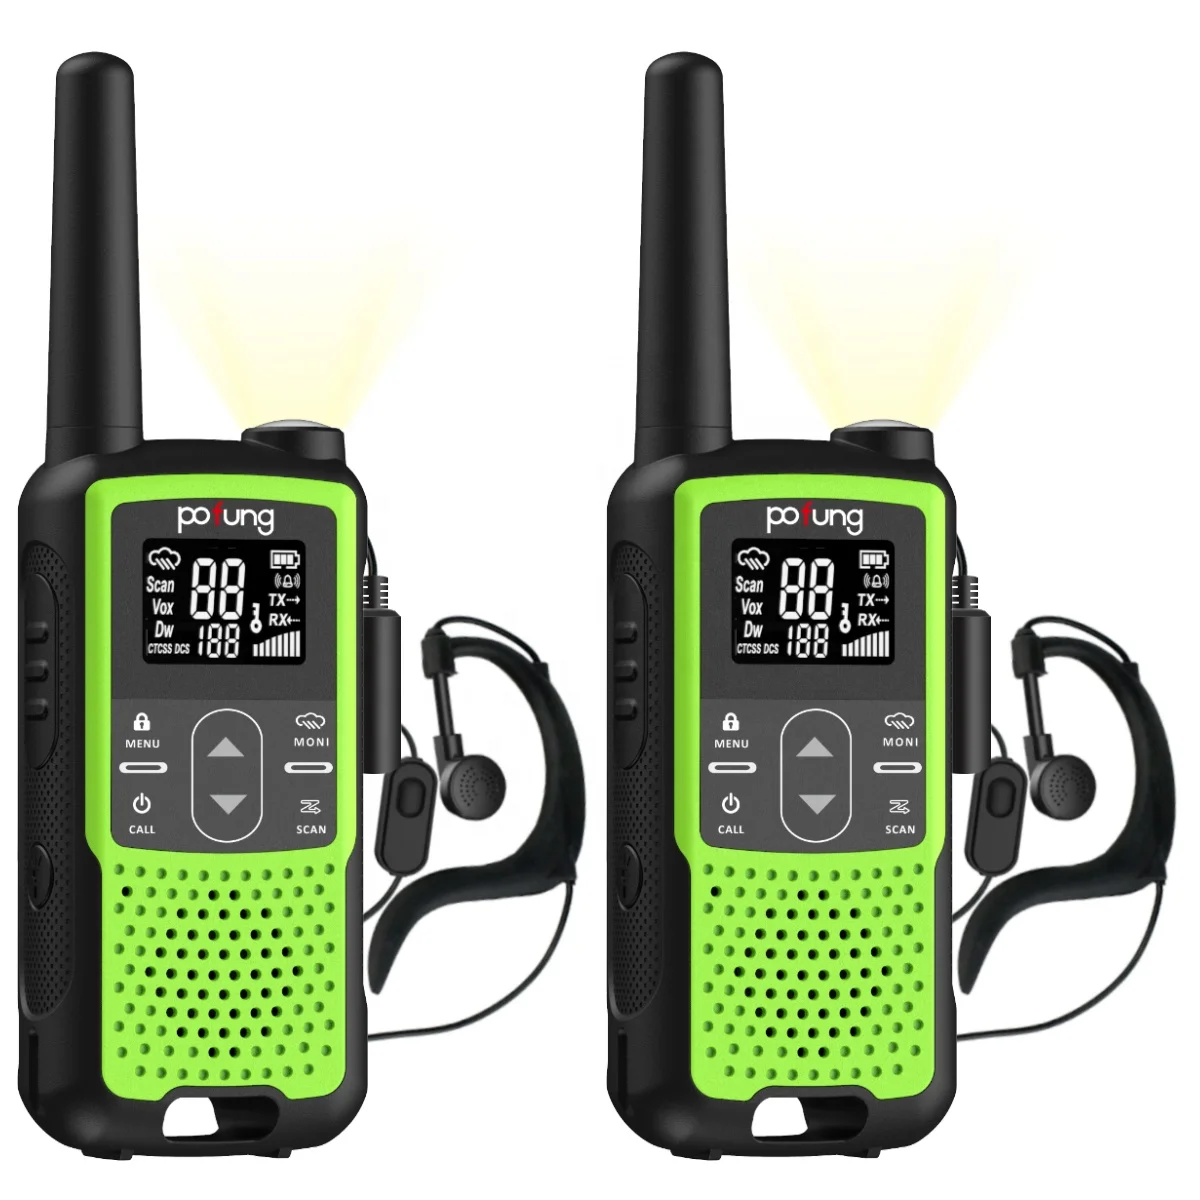 Mini pmr446 frs vibration radios